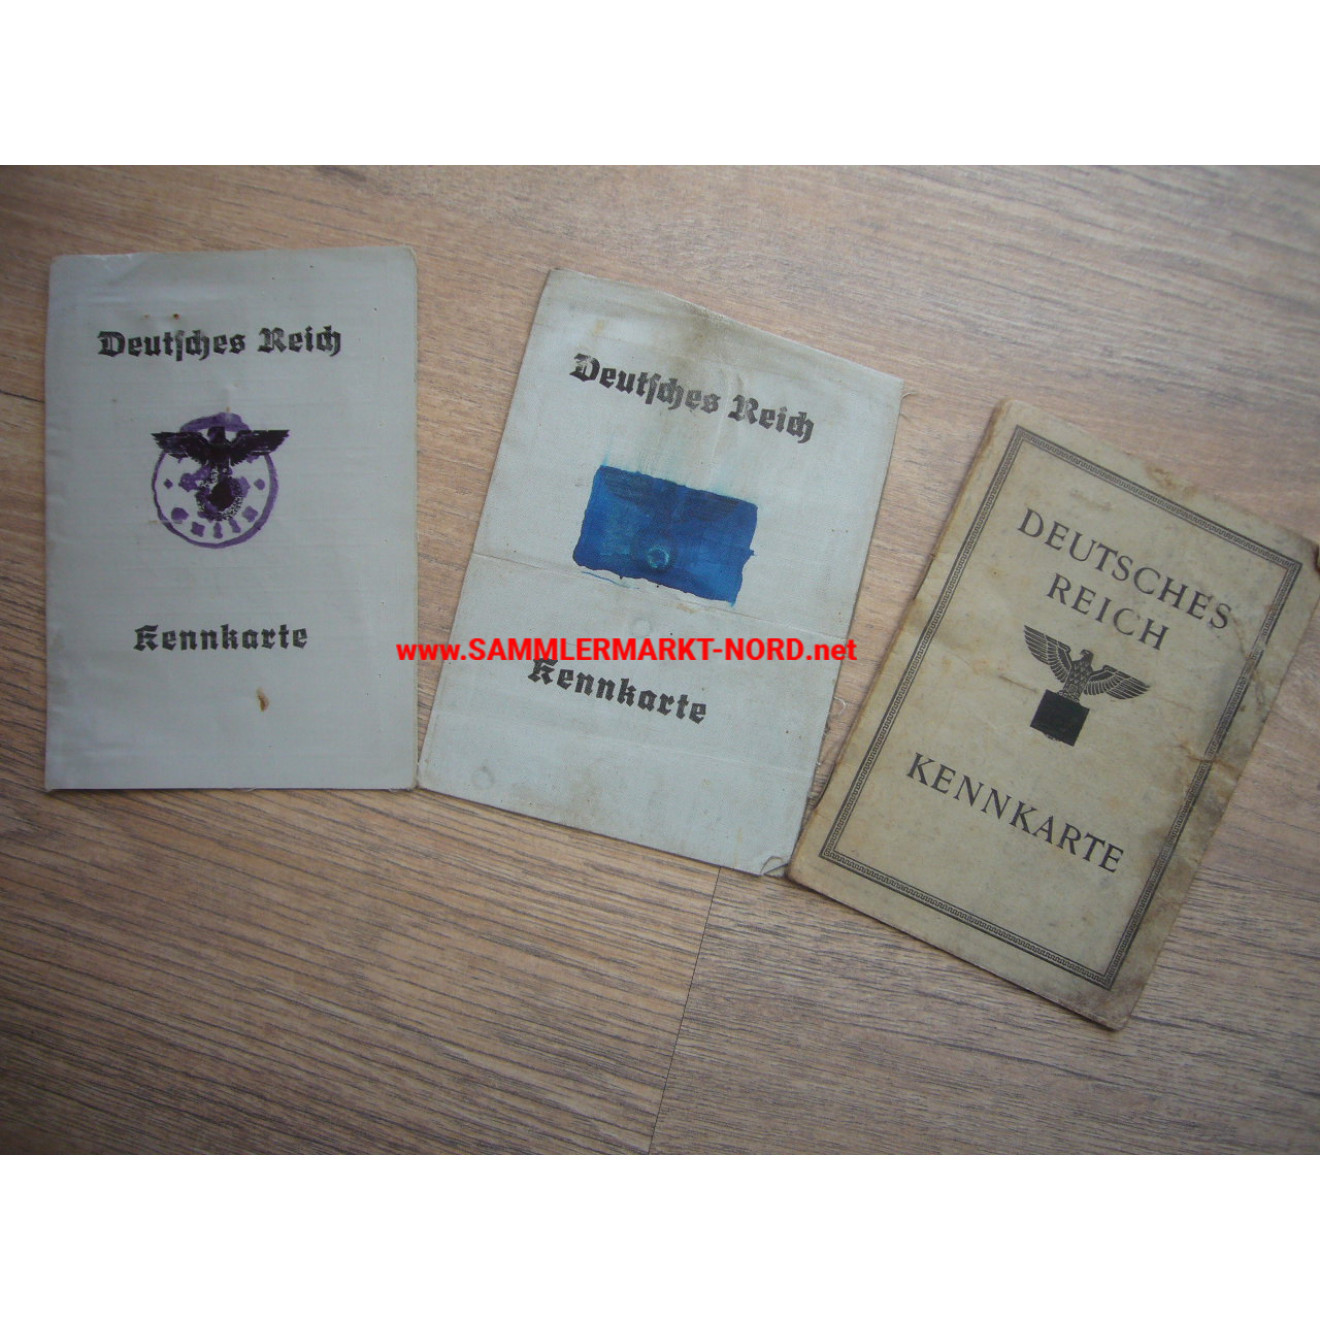 3 x Deutsches Reich - Kennkarte